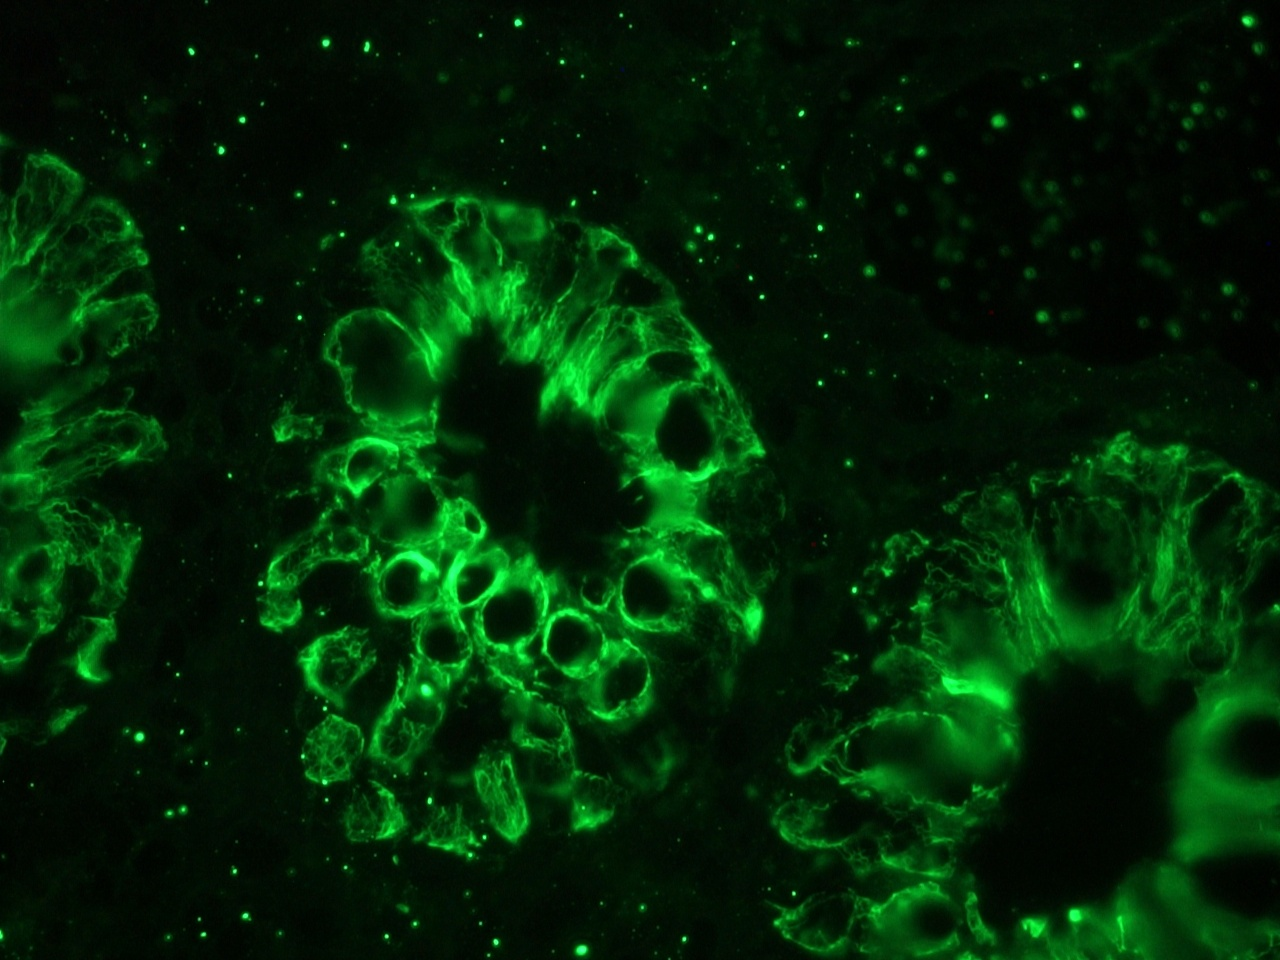  Figure 6. MUB0326P immunofluorescence staining of human colon epithelium.